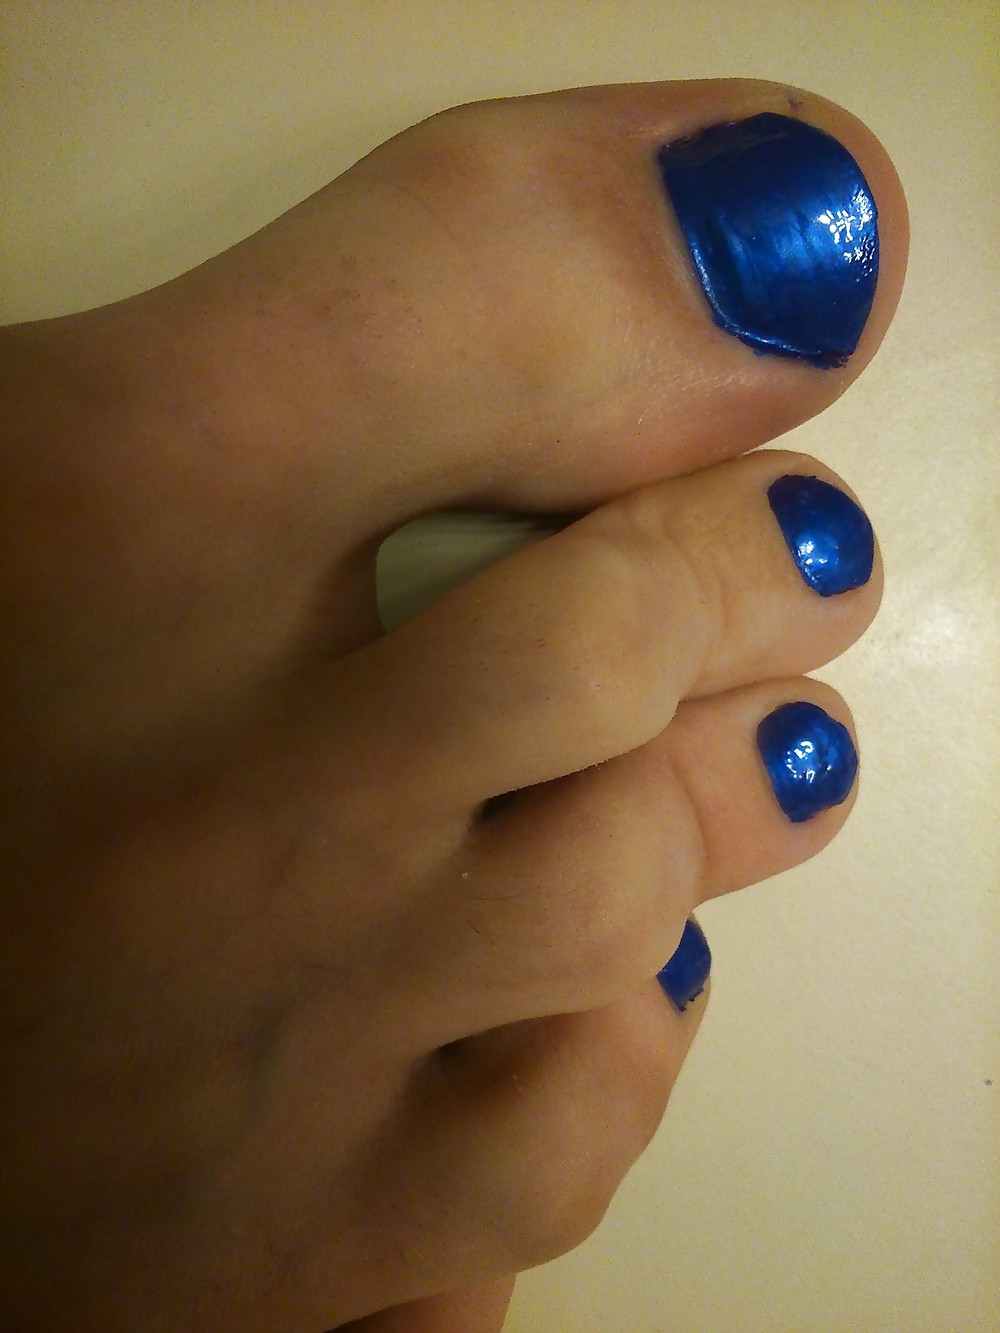 Pies y dedos de los pies en esmalte de uñas azul y tacones de cuero.
 #30148031